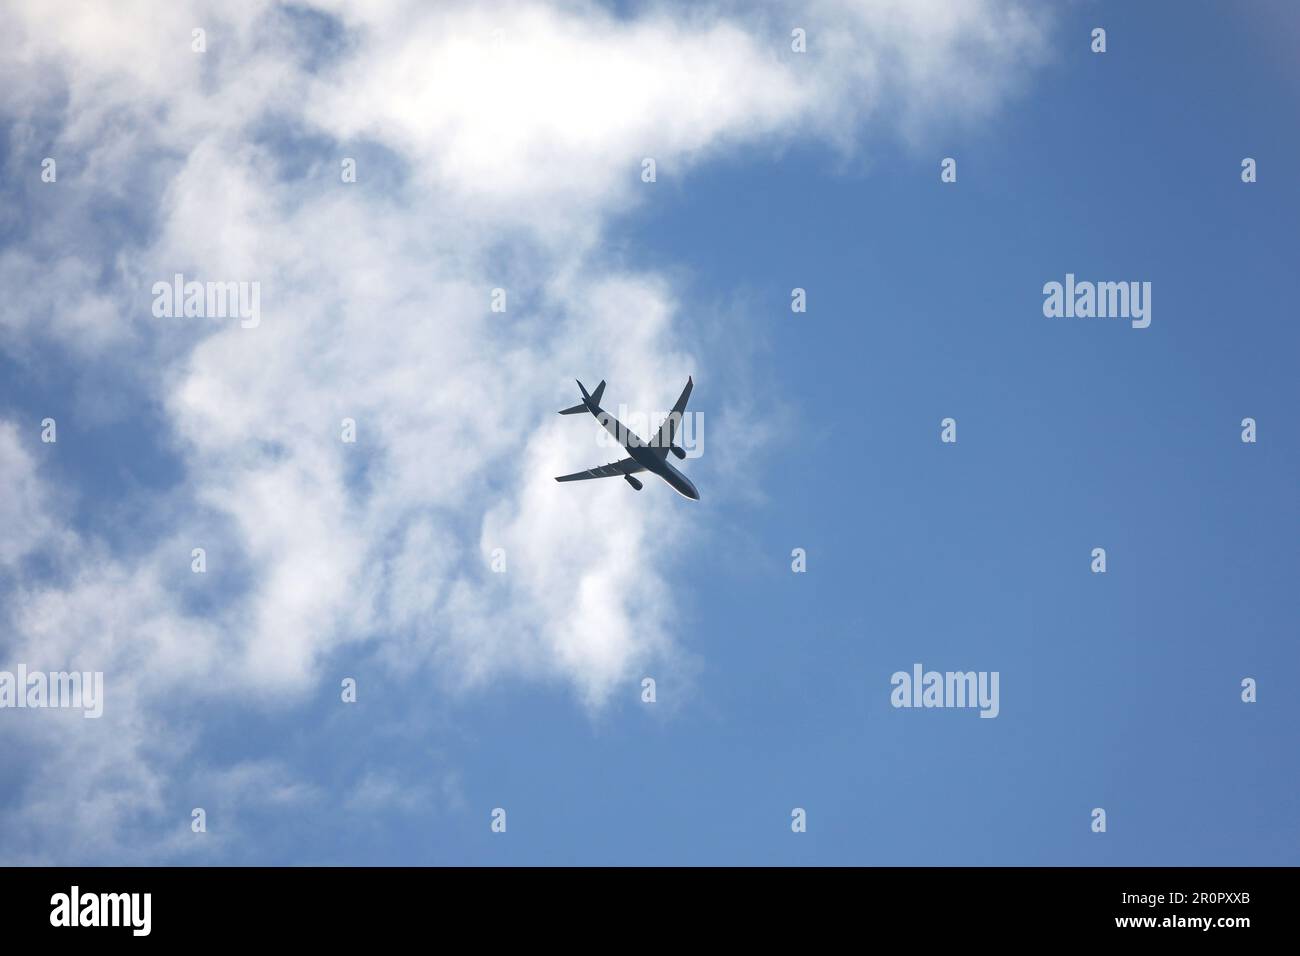 Silhouette d'avion volant dans le ciel avec des nuages blancs. Avion passager en vol, concept de voyage Banque D'Images